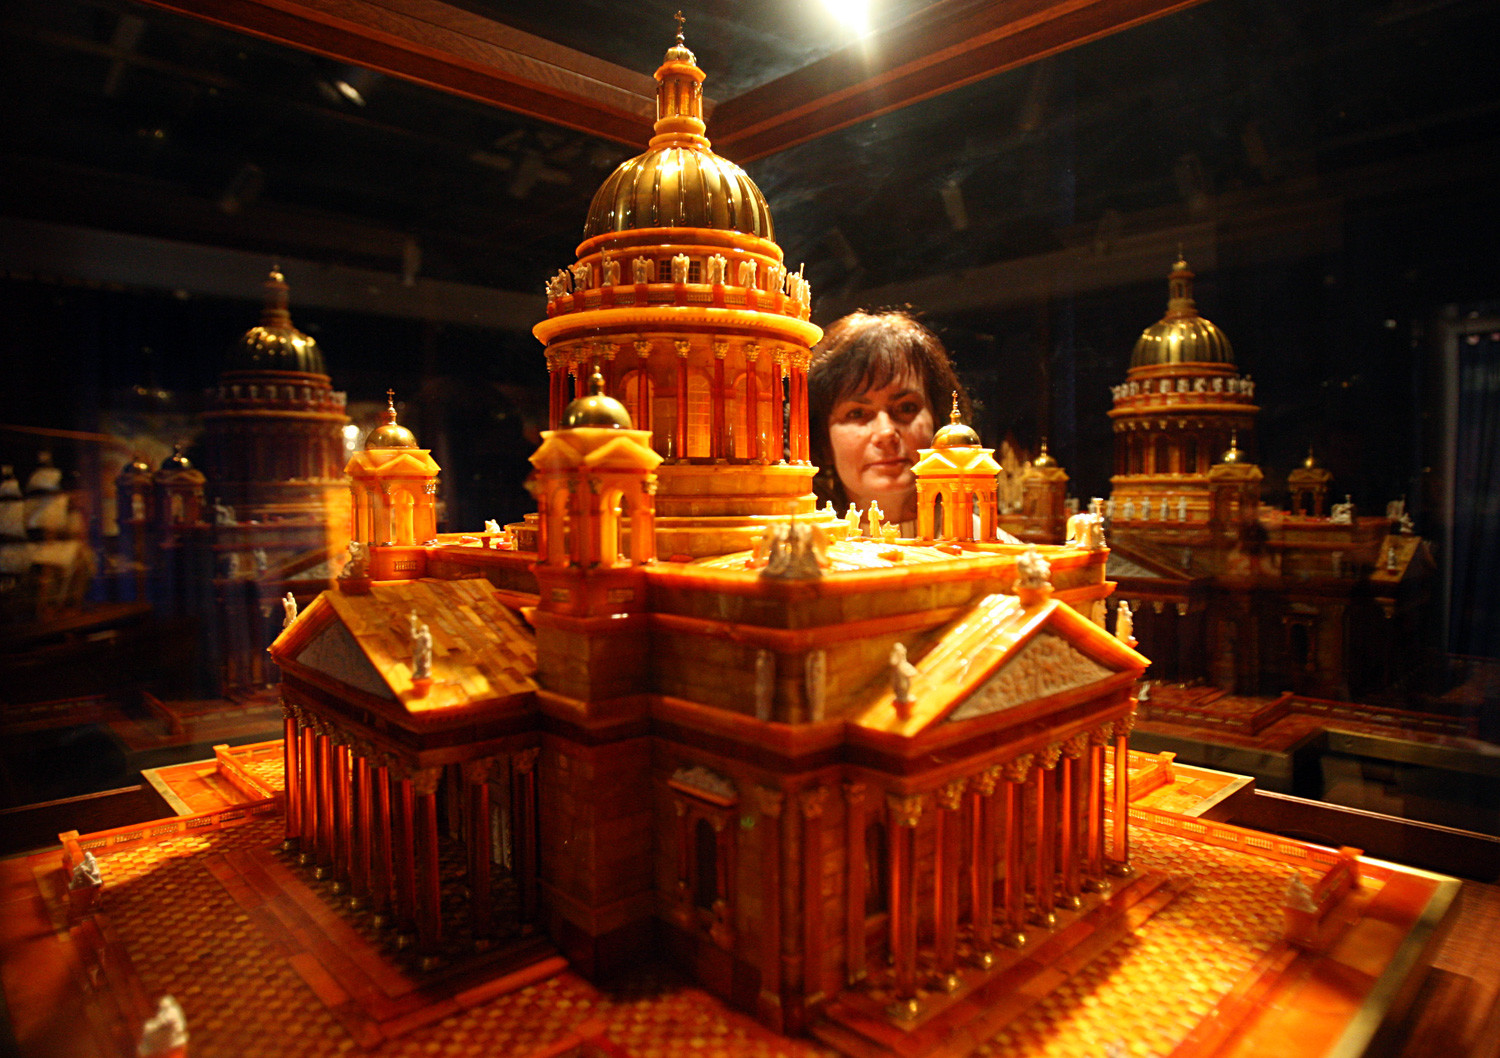 Un modello in scala, realizzato in ambra, della Cattedrale di Sant’Isacco